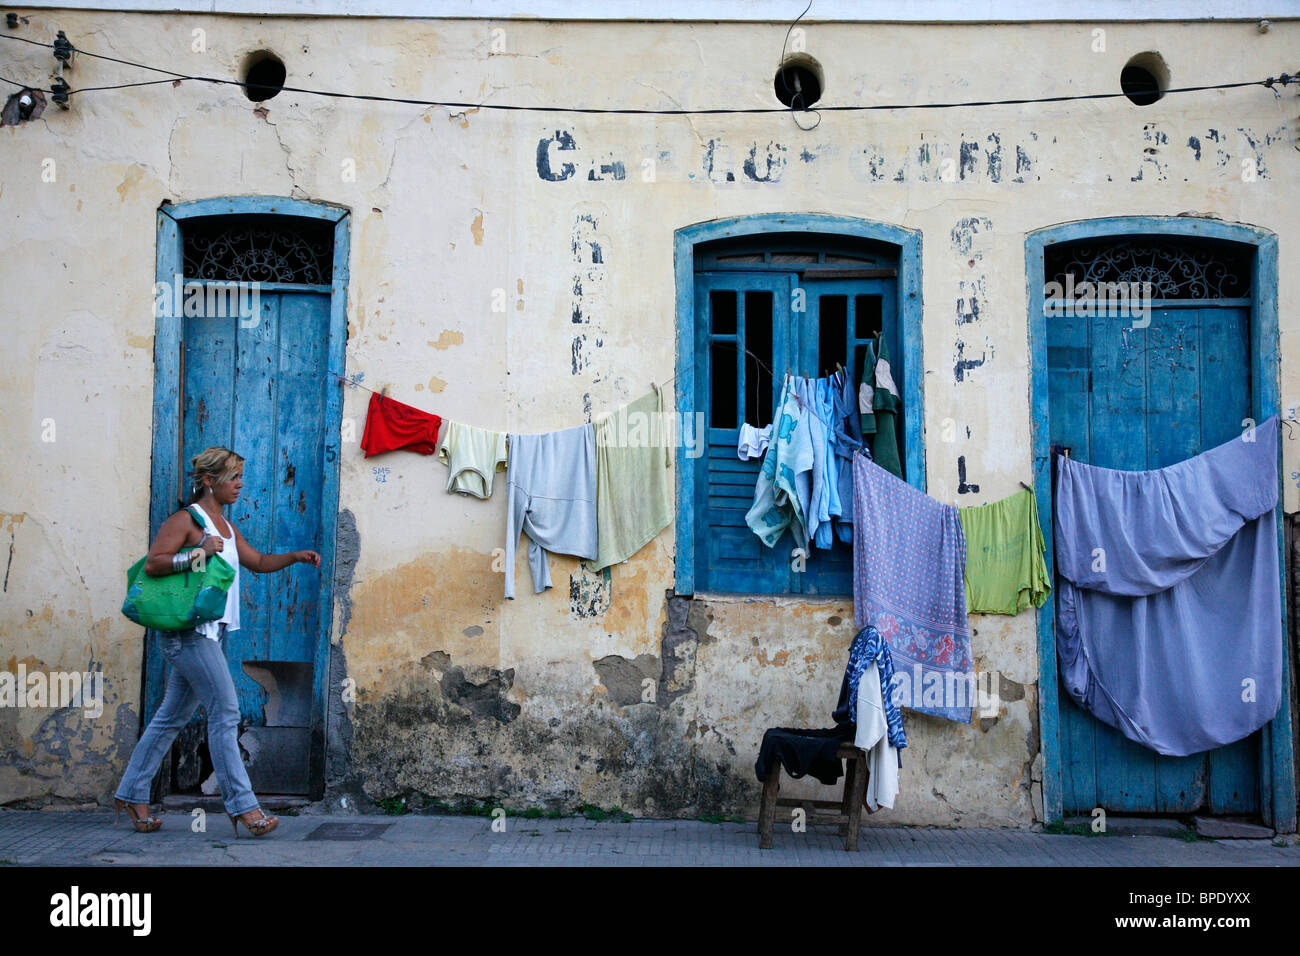 Femme marche par un vieux bâtiment avec une laverie en accrochant, Cachoeira, Bahia, Brésil. Banque D'Images